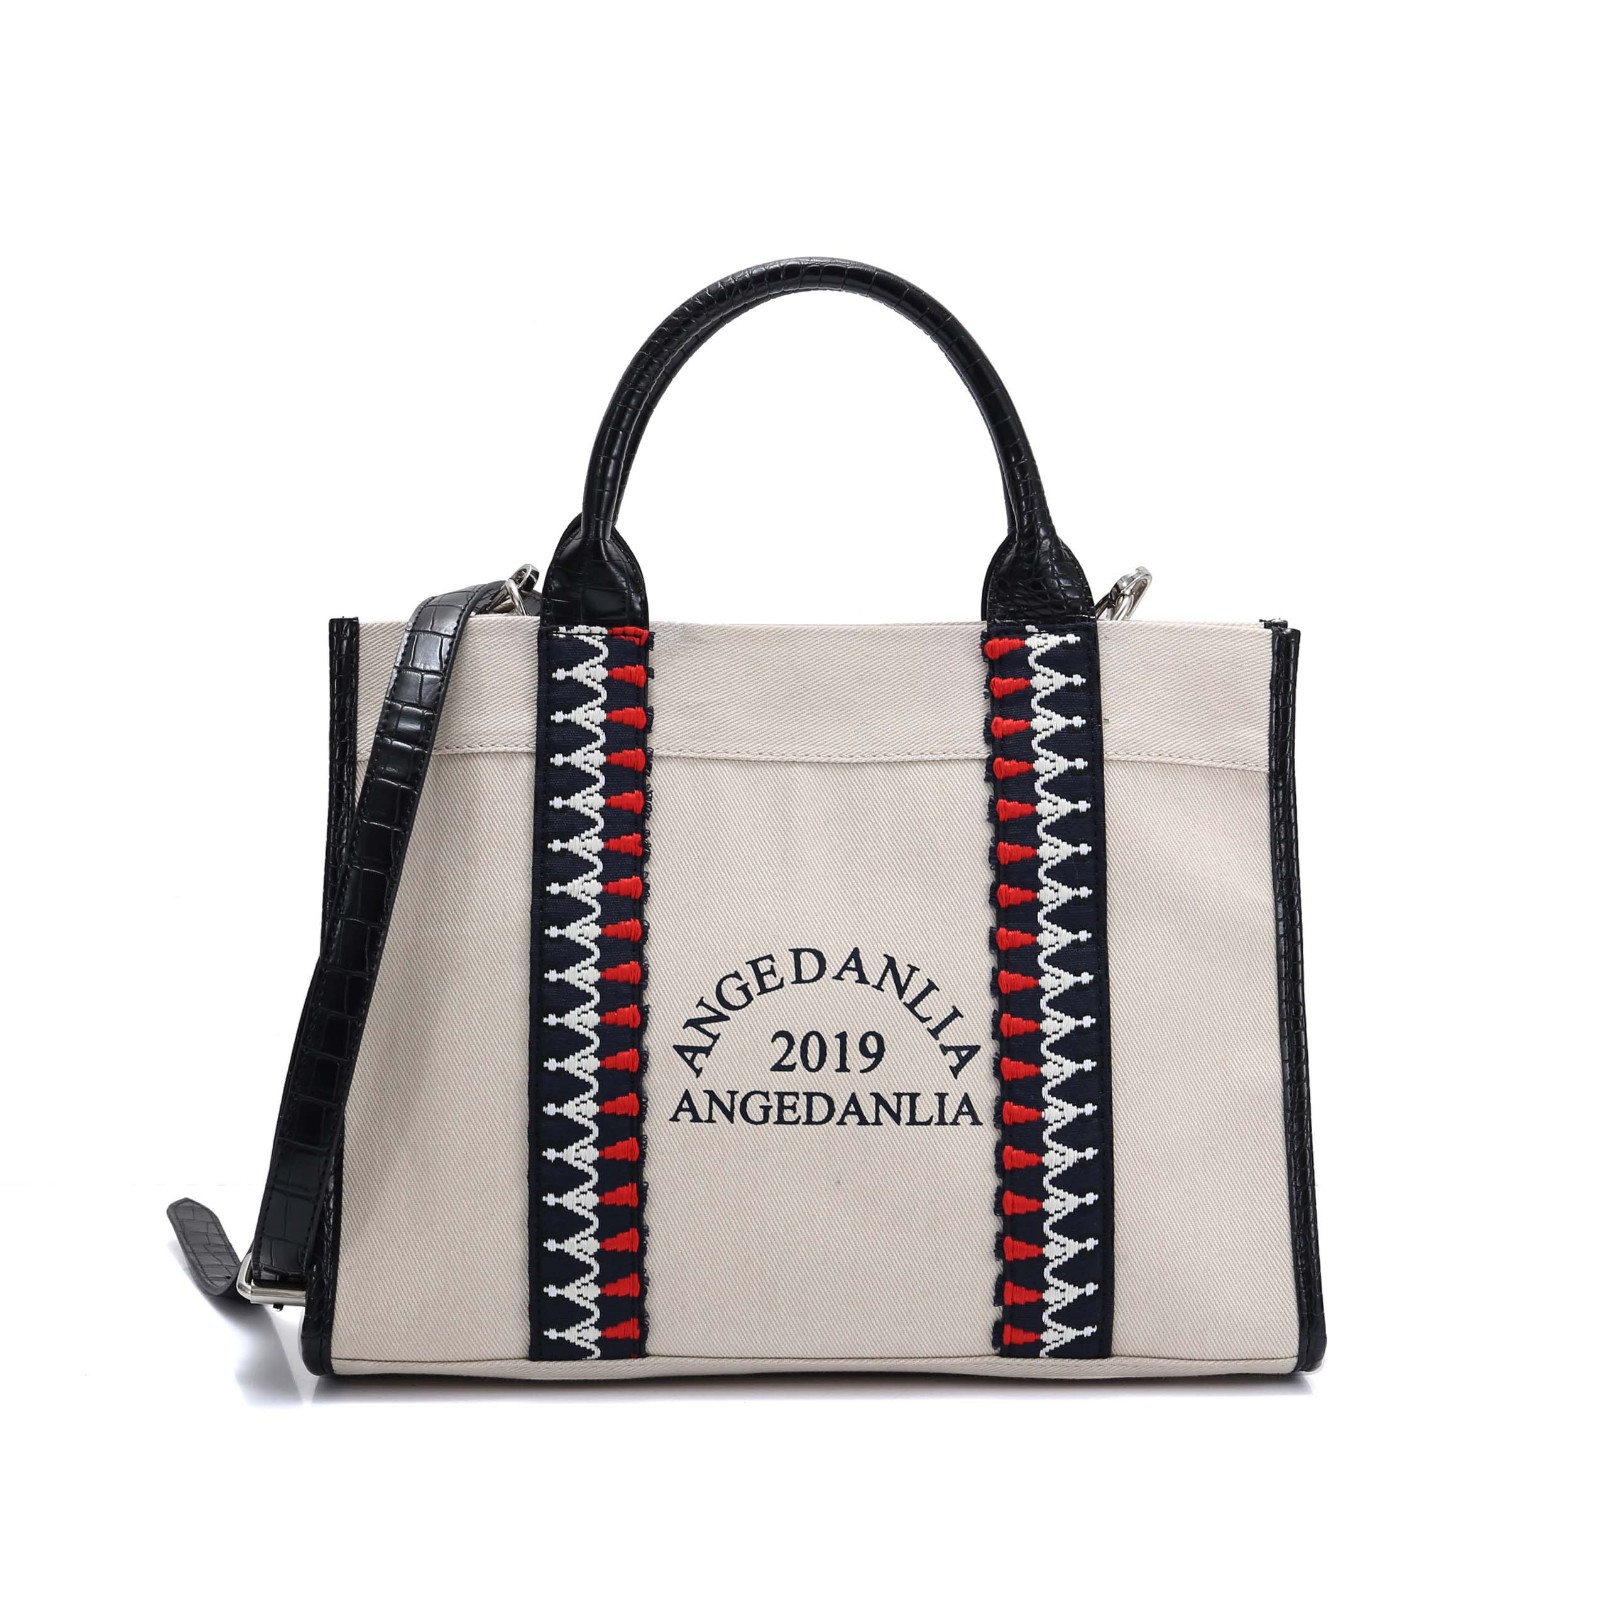 shoulder handbags online